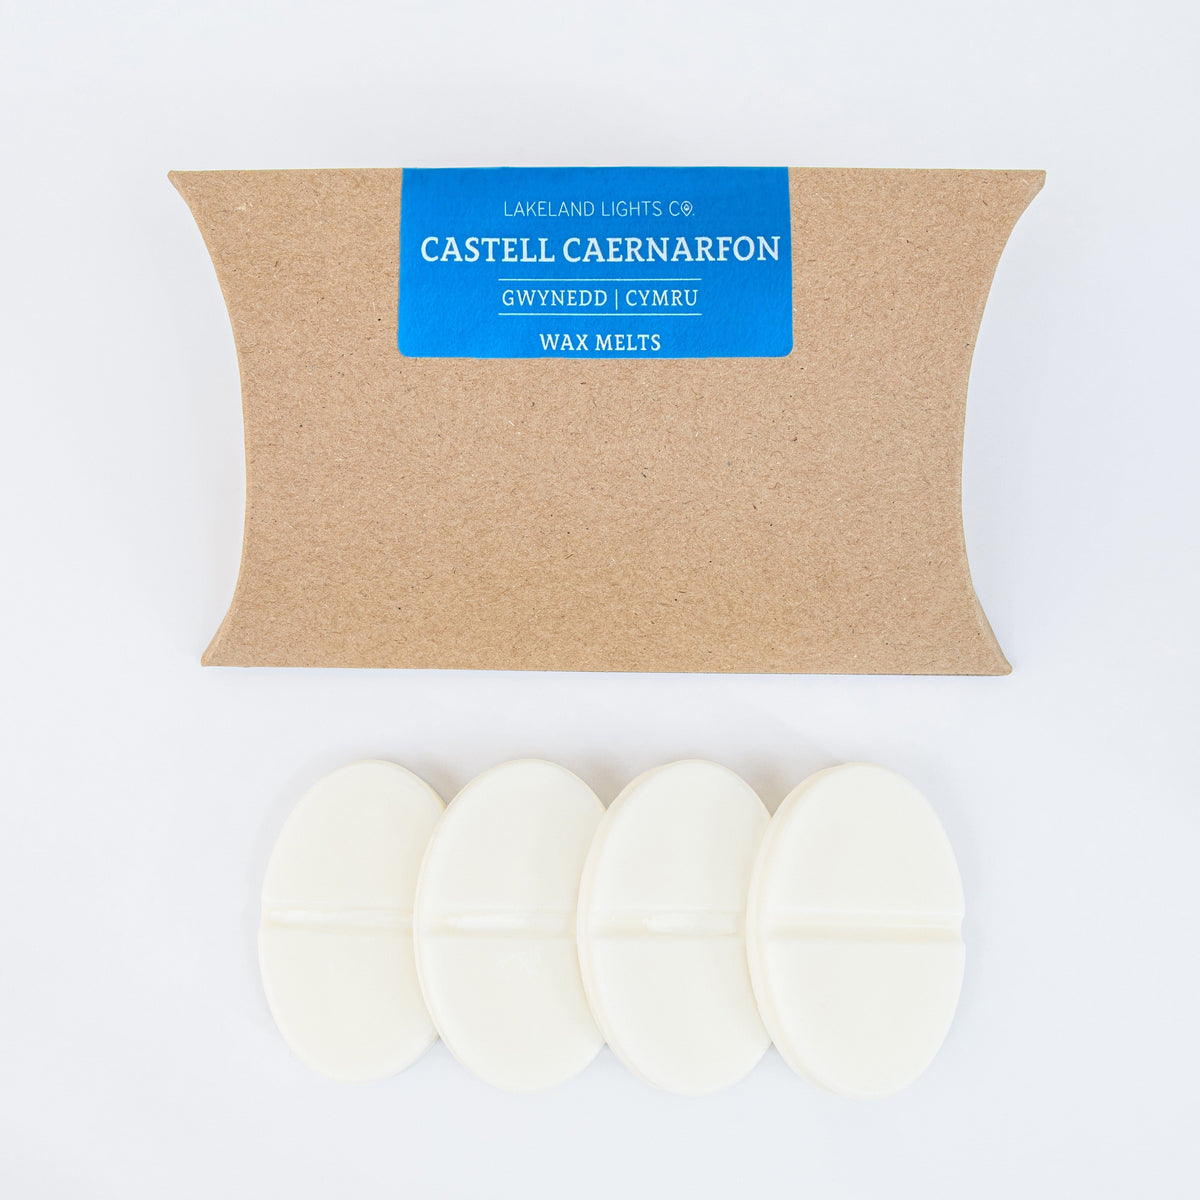 Castell Caernarfon Wax Melts